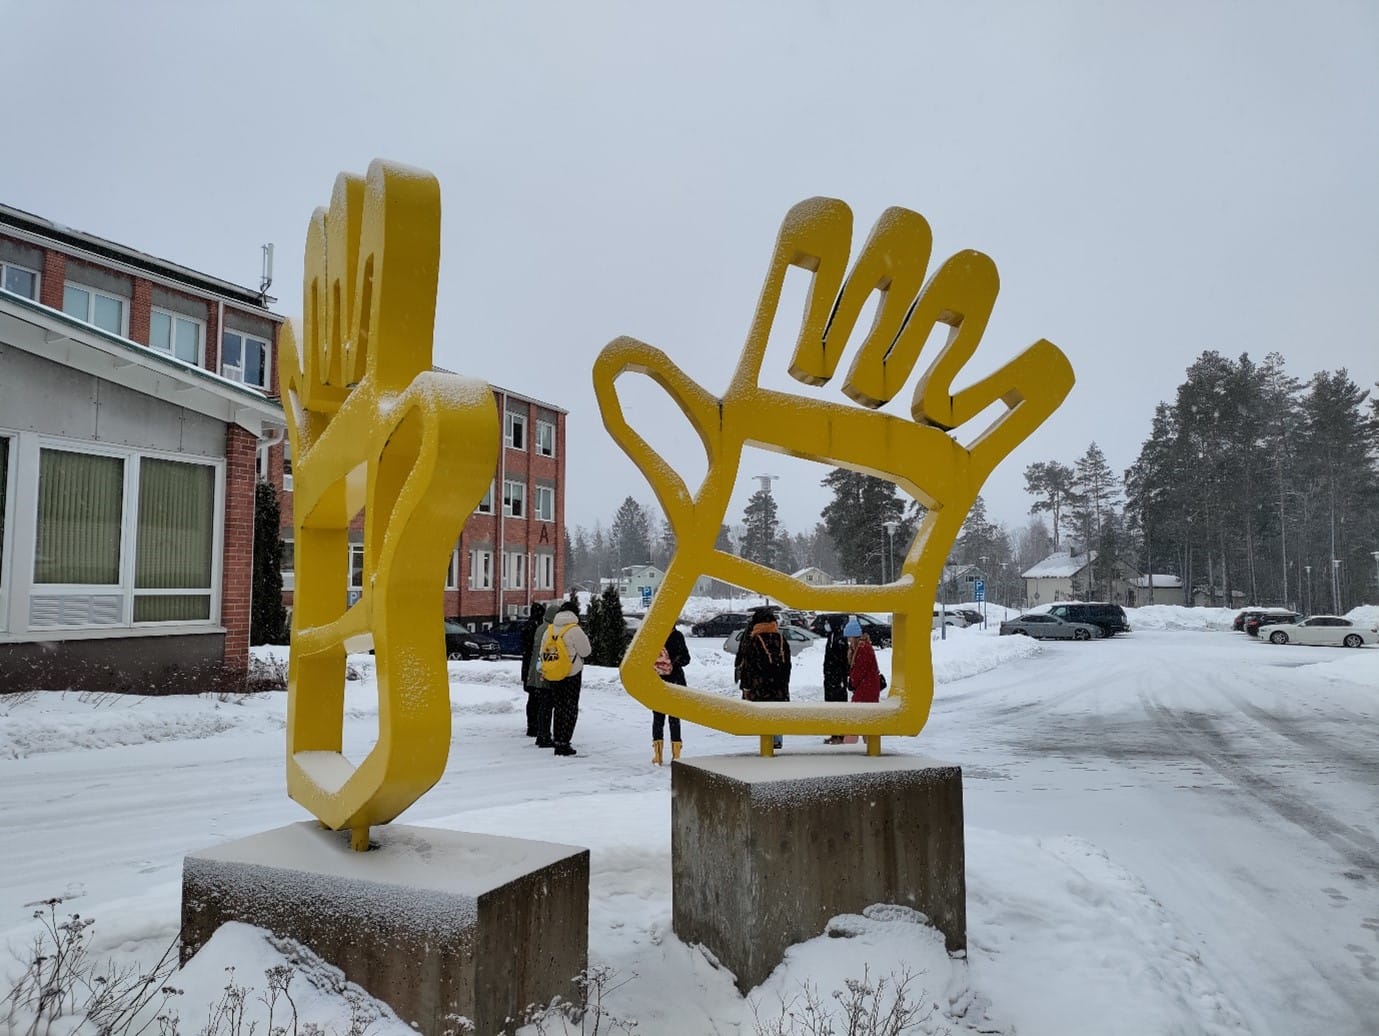 Hanna Luukkosen teos Työ tekijäänsä kiittää, kaksi suurta keltaista kättä muistuttavaa teosta Kankaanpään keskustassa.